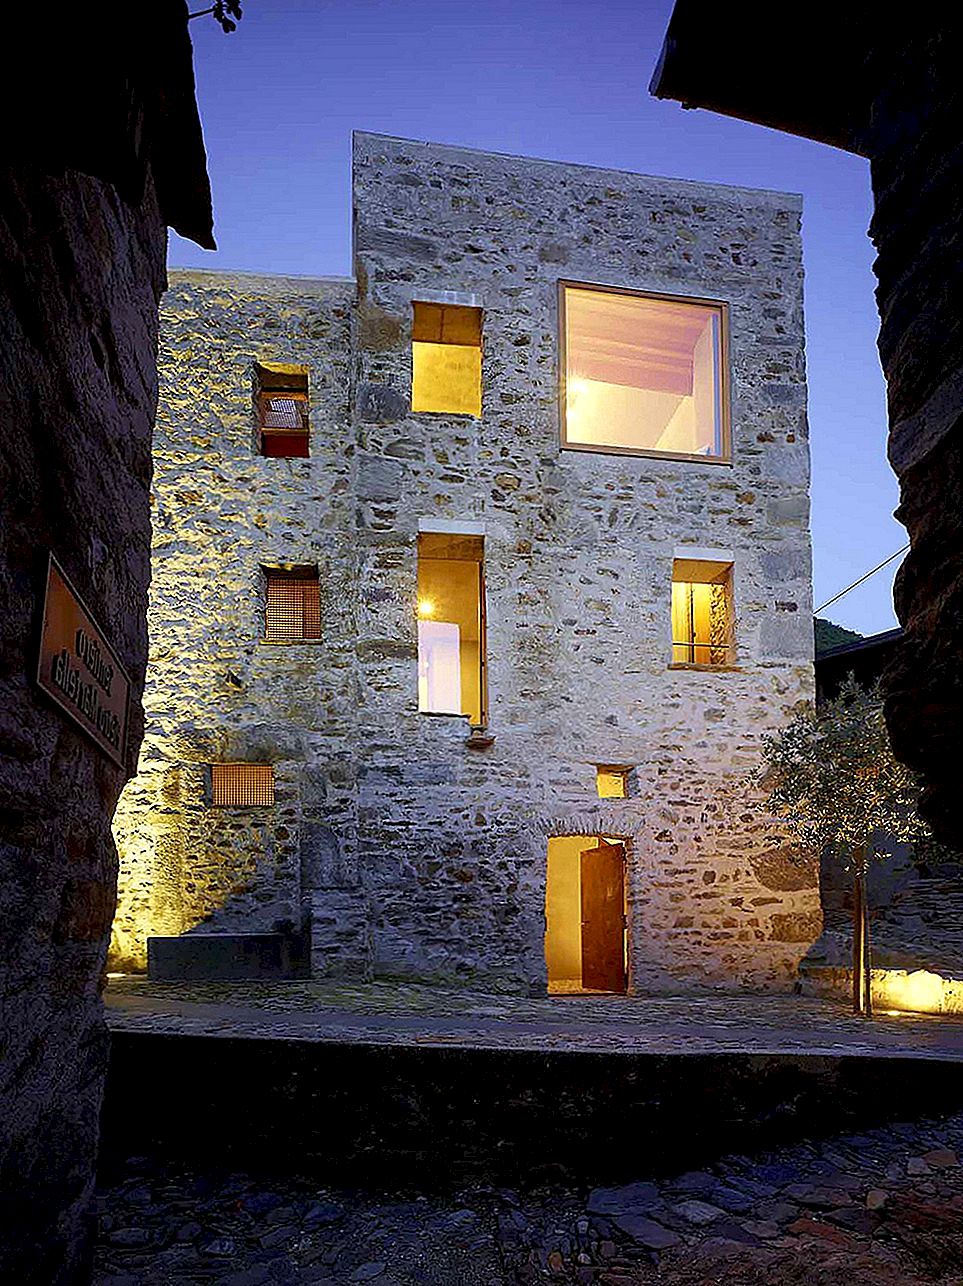 Sofistikovanost definuje nedávno renovovaný kamenný dům ve Švýcarsku